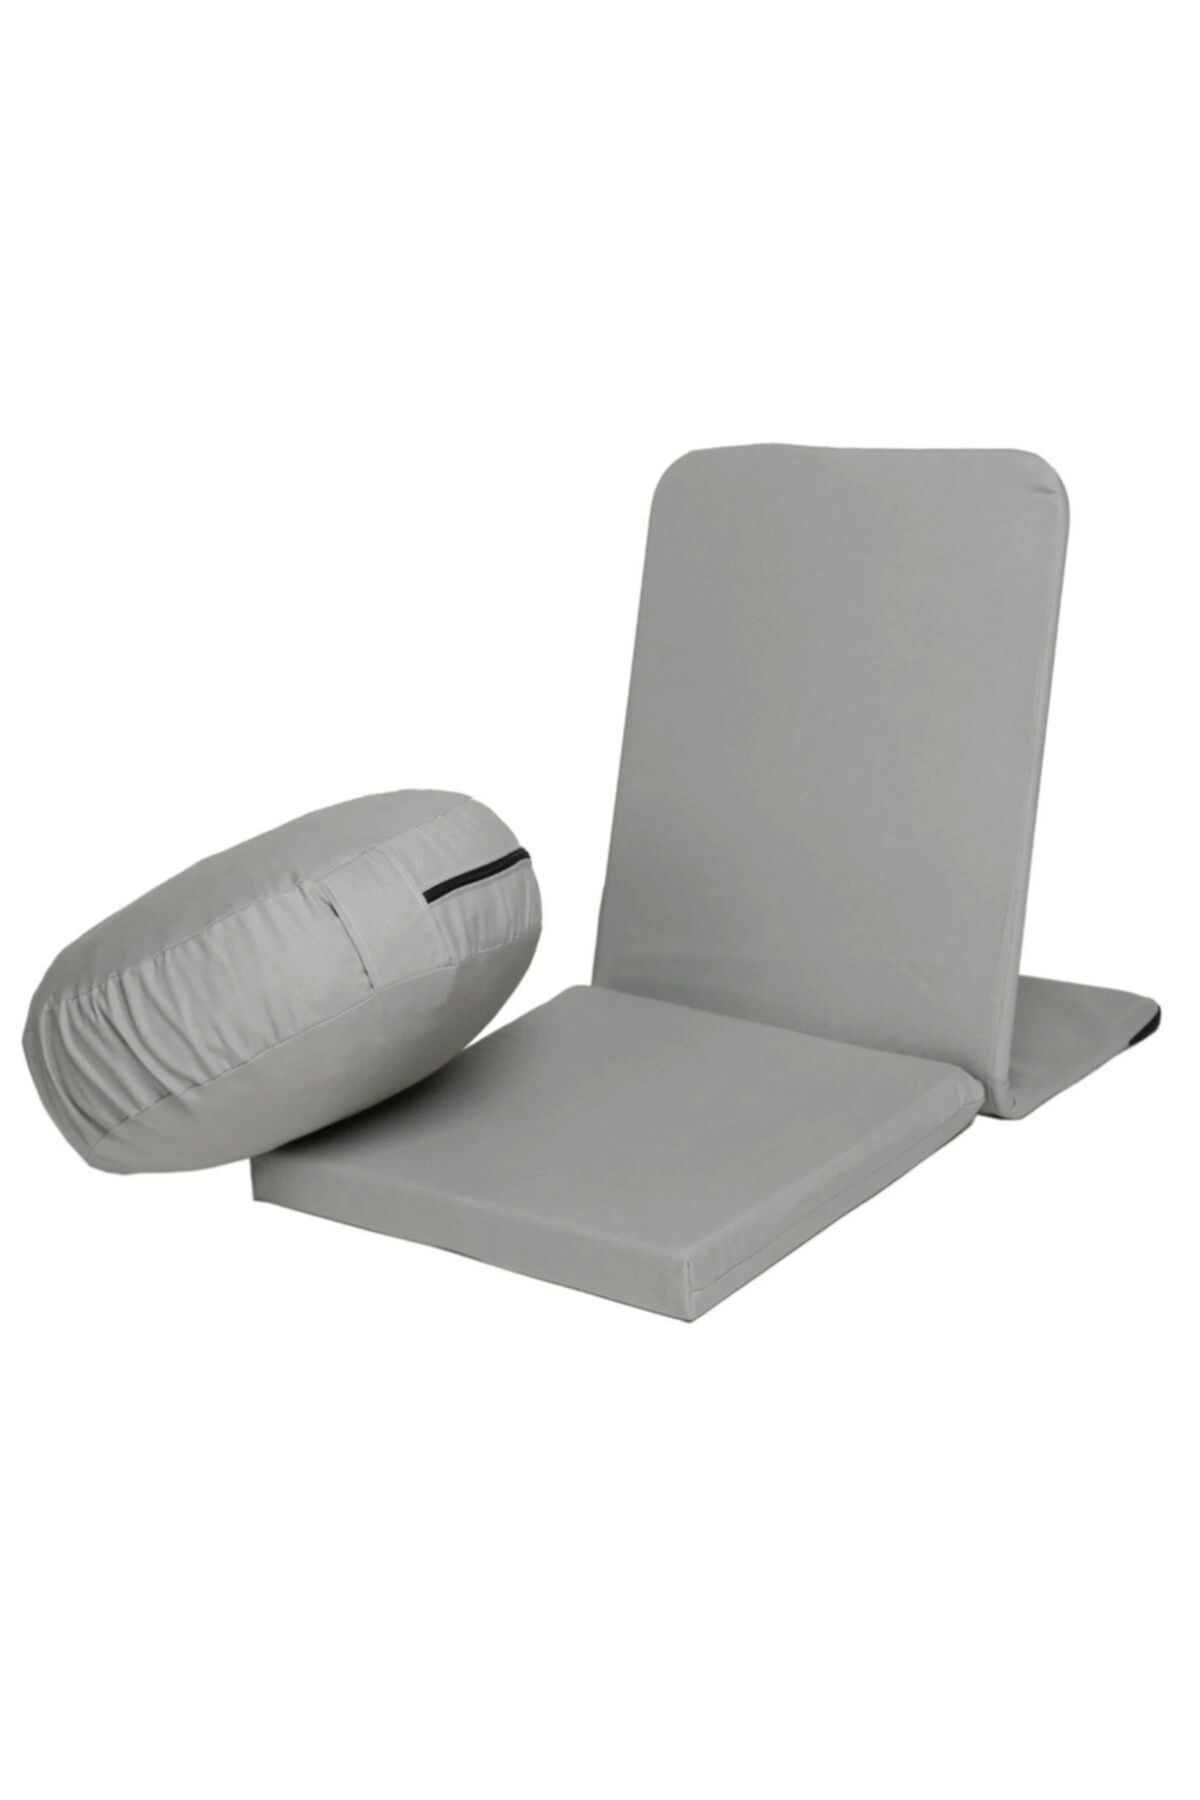 REMEGE Meditasyon Sandalyesi Backjack Destekli Yer Minderi + Meditasyon Minderi Ikili Set